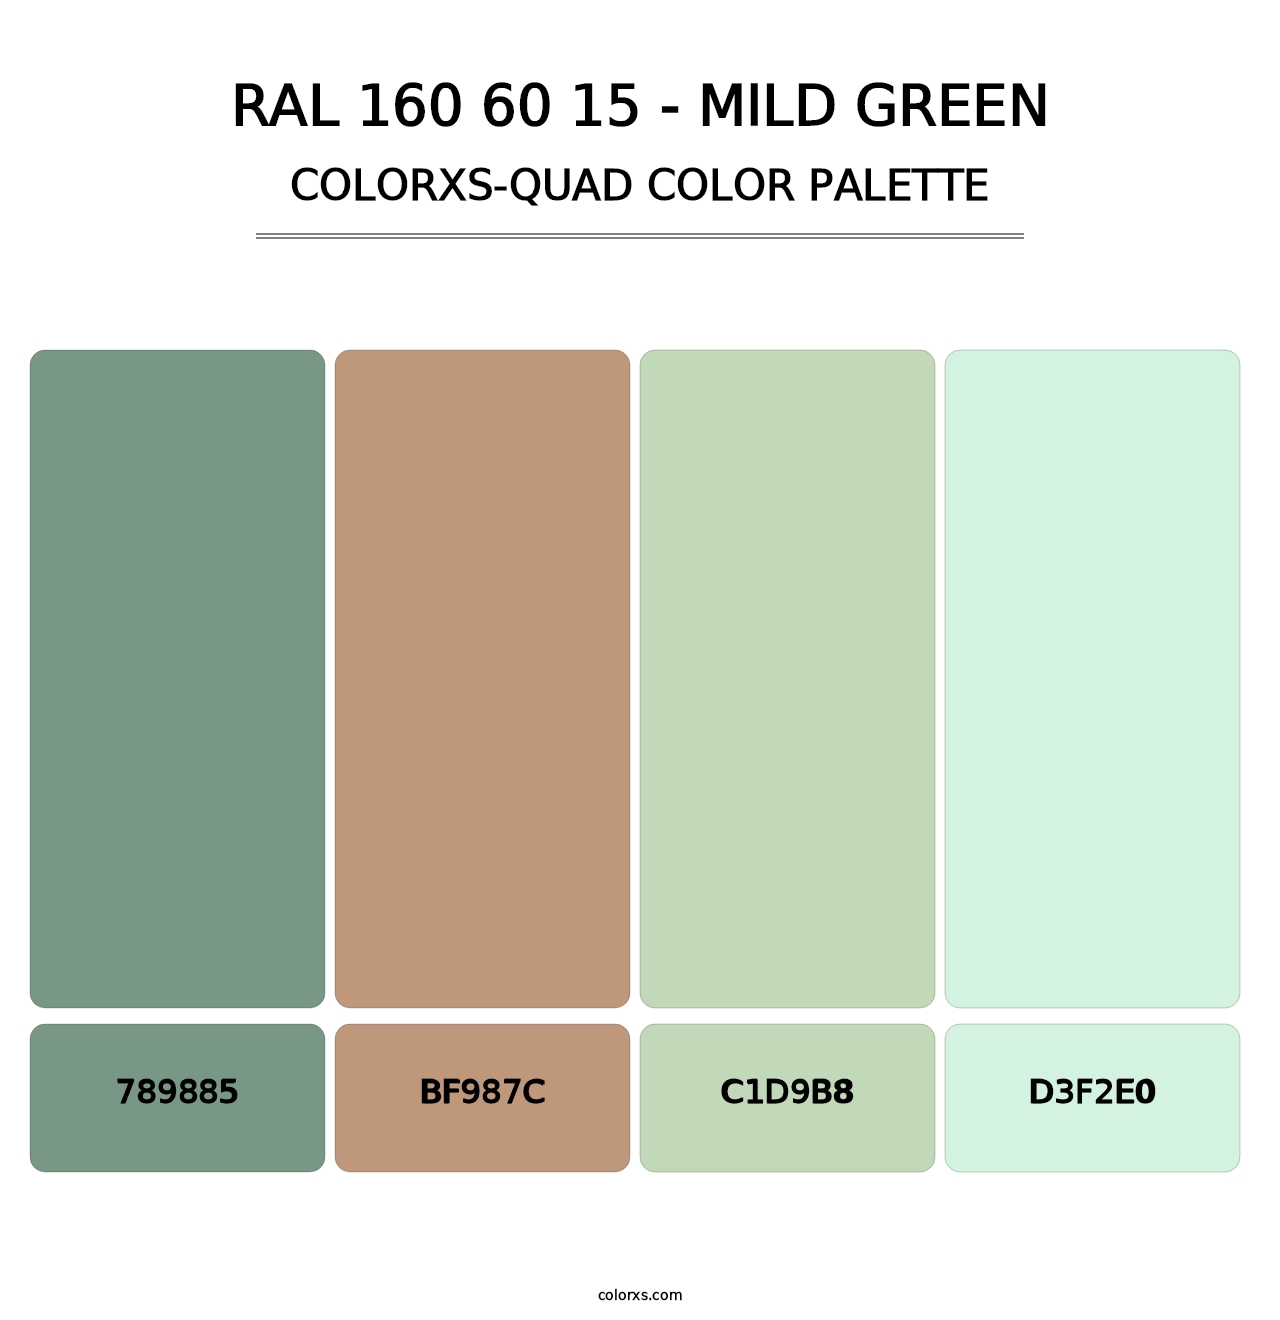 RAL 160 60 15 - Mild Green - Colorxs Quad Palette